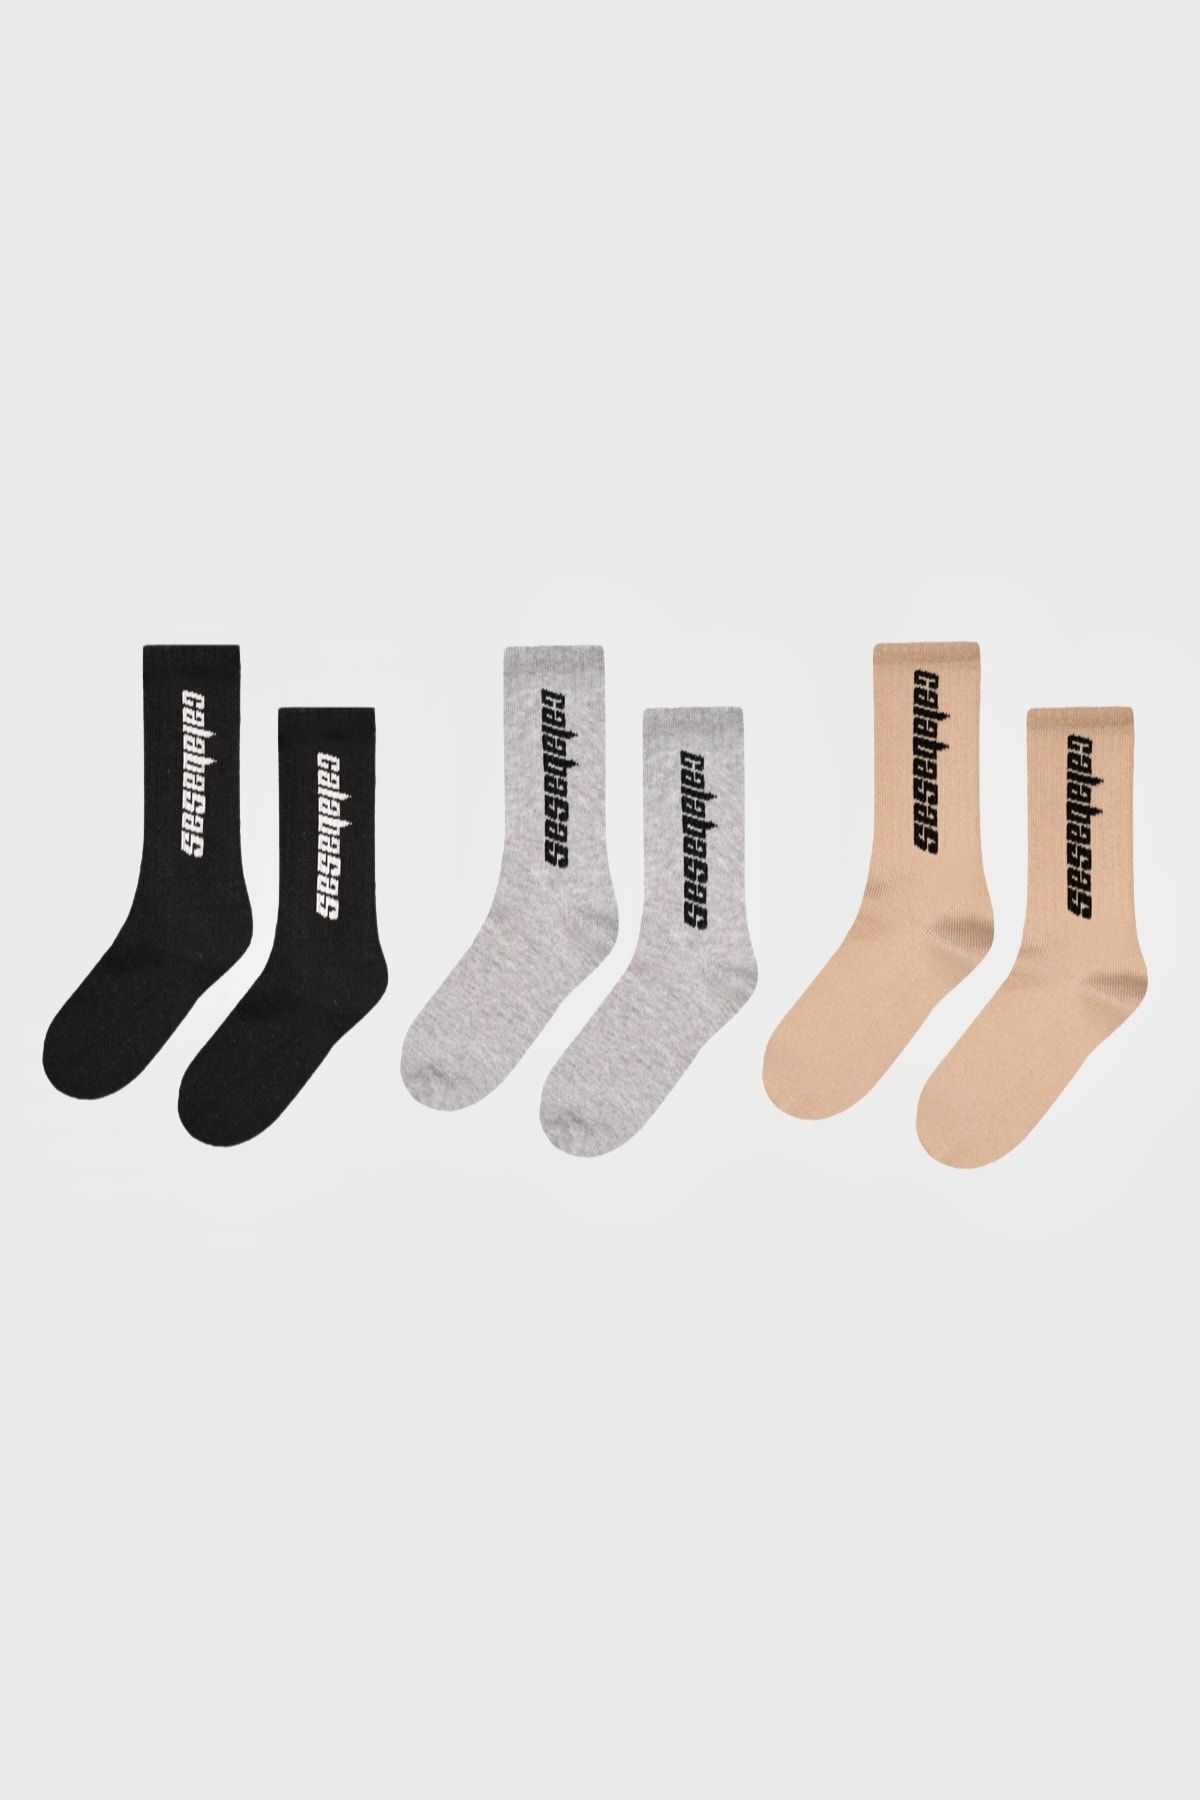 BOSHETTI Unisex Yıkamalı Premium Çok Renkli Sloganlı 3'lü Paket Spor Çorap